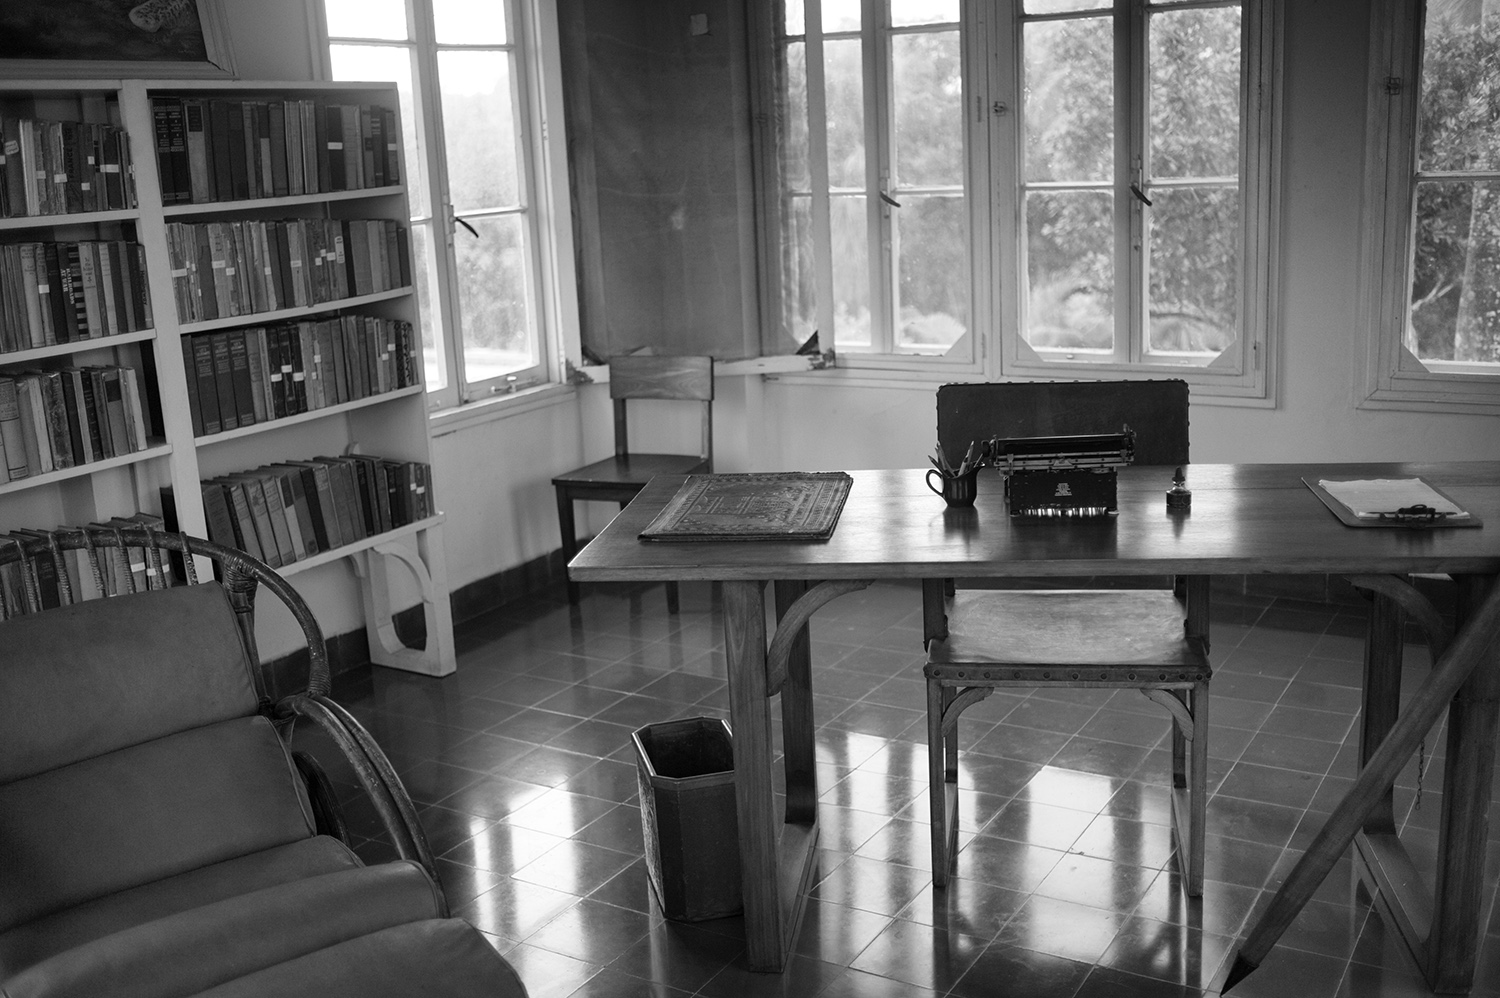 Hemingway's Writing Room